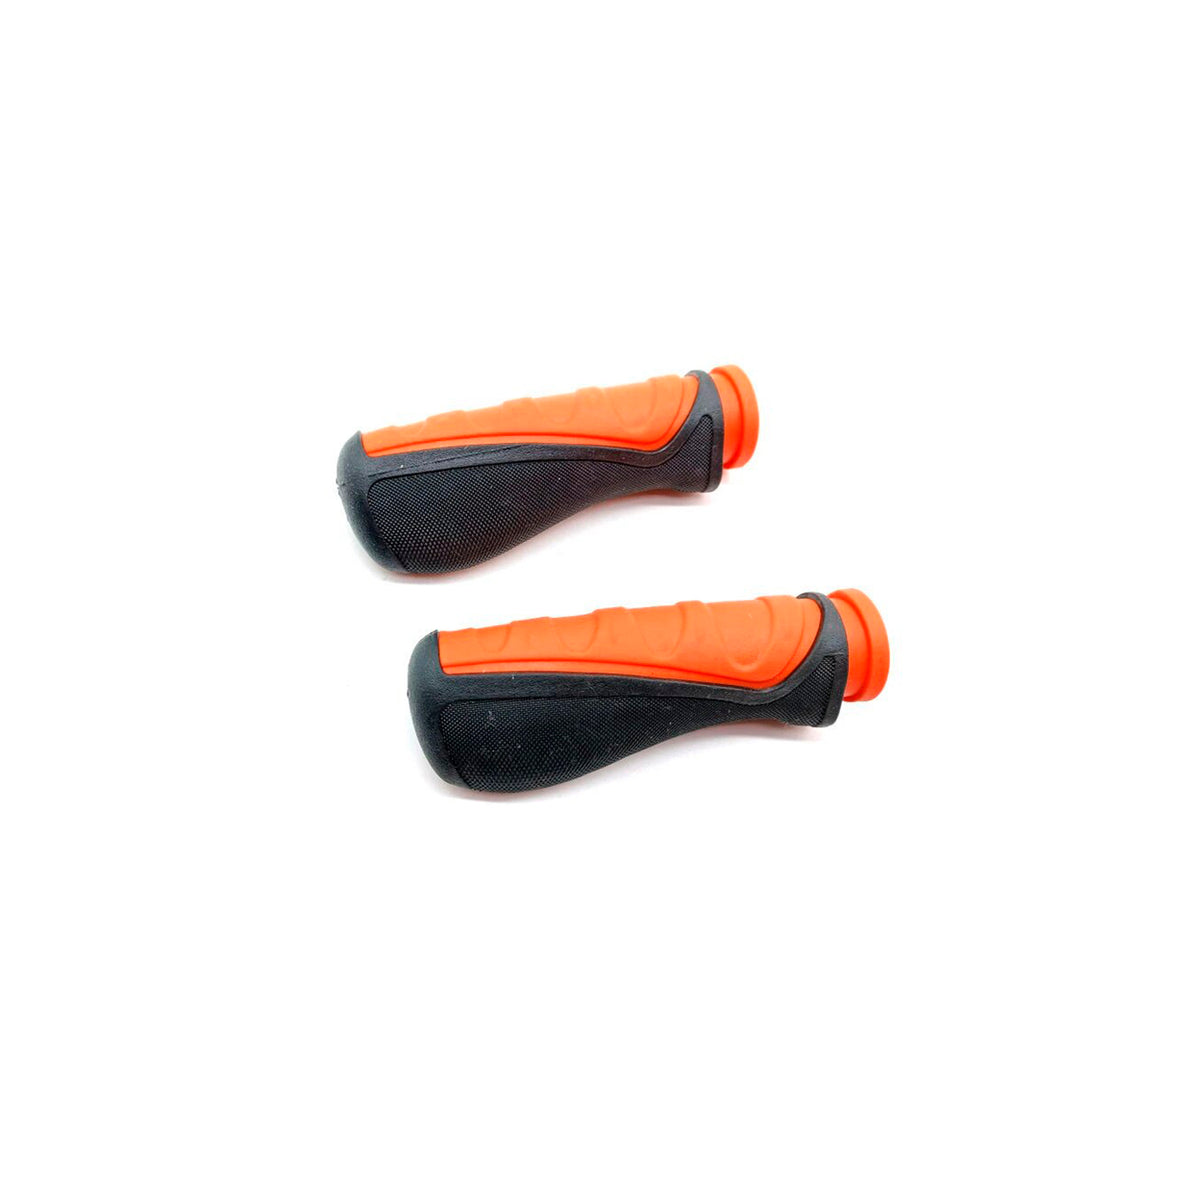 Inokim original handle grips for all Inokim scooter models